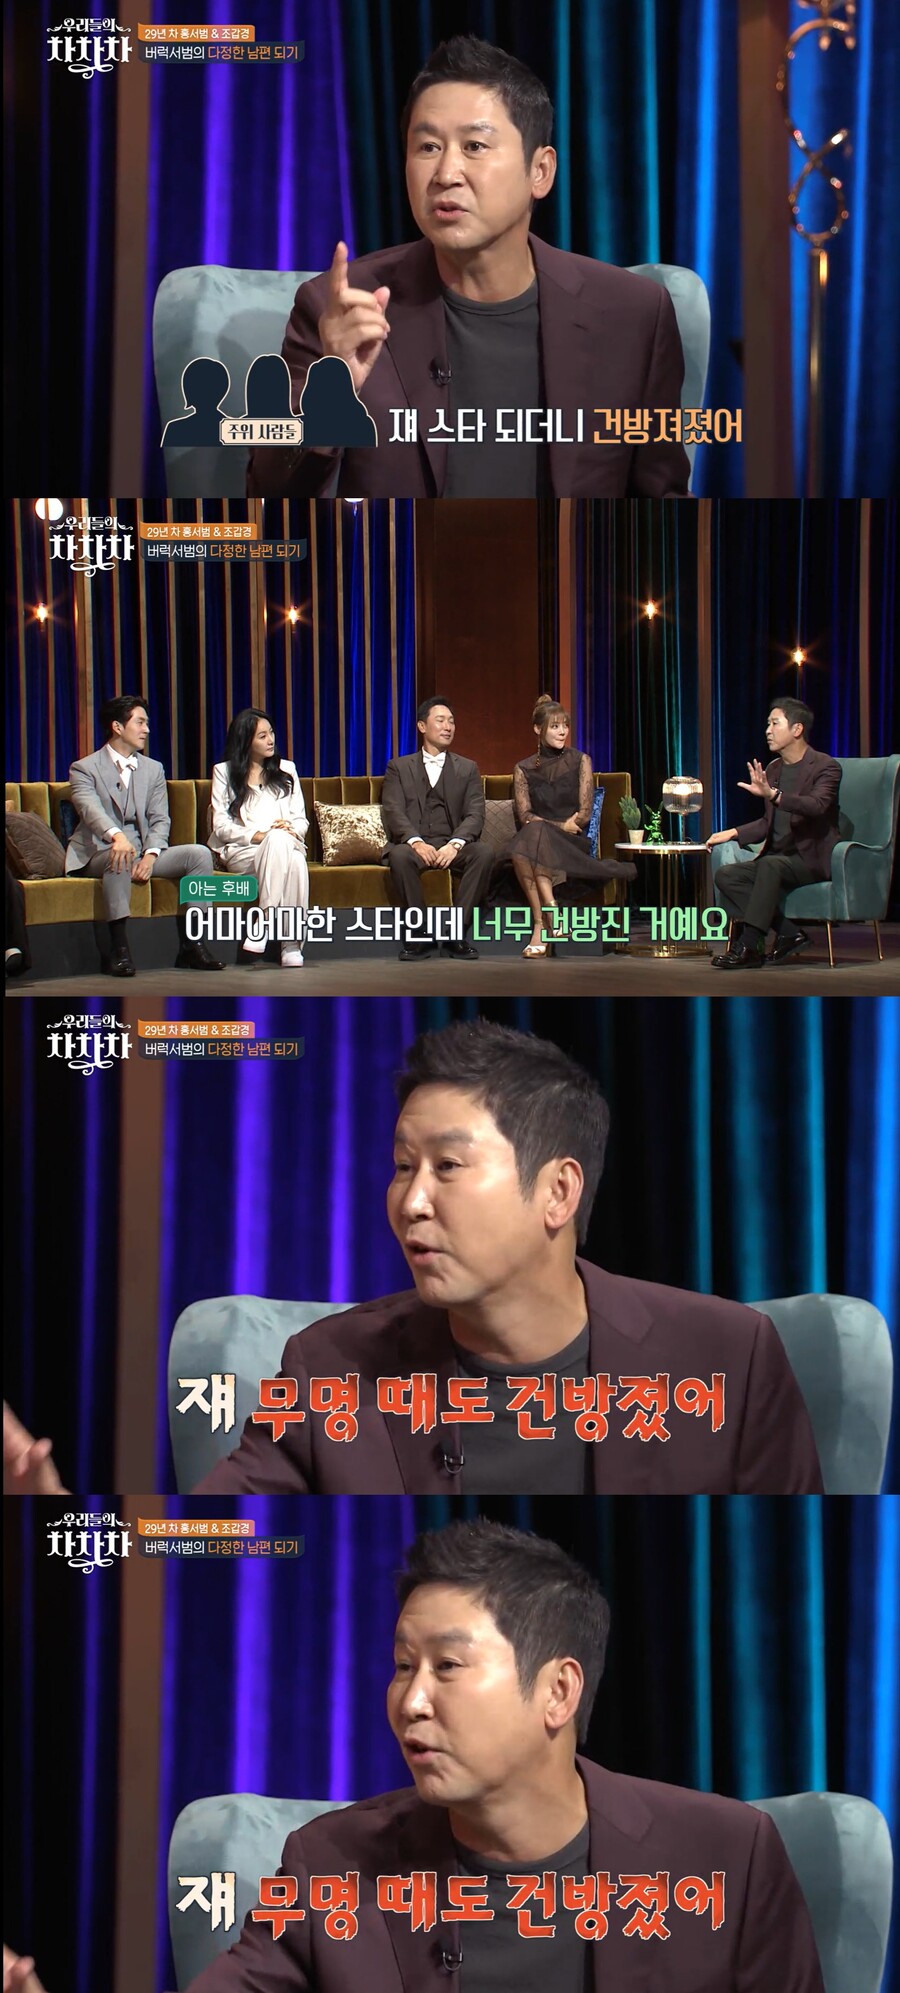 ▲ tvN 예능프로그램 '우리들의 차차차' 방송화면. 출처| tvN